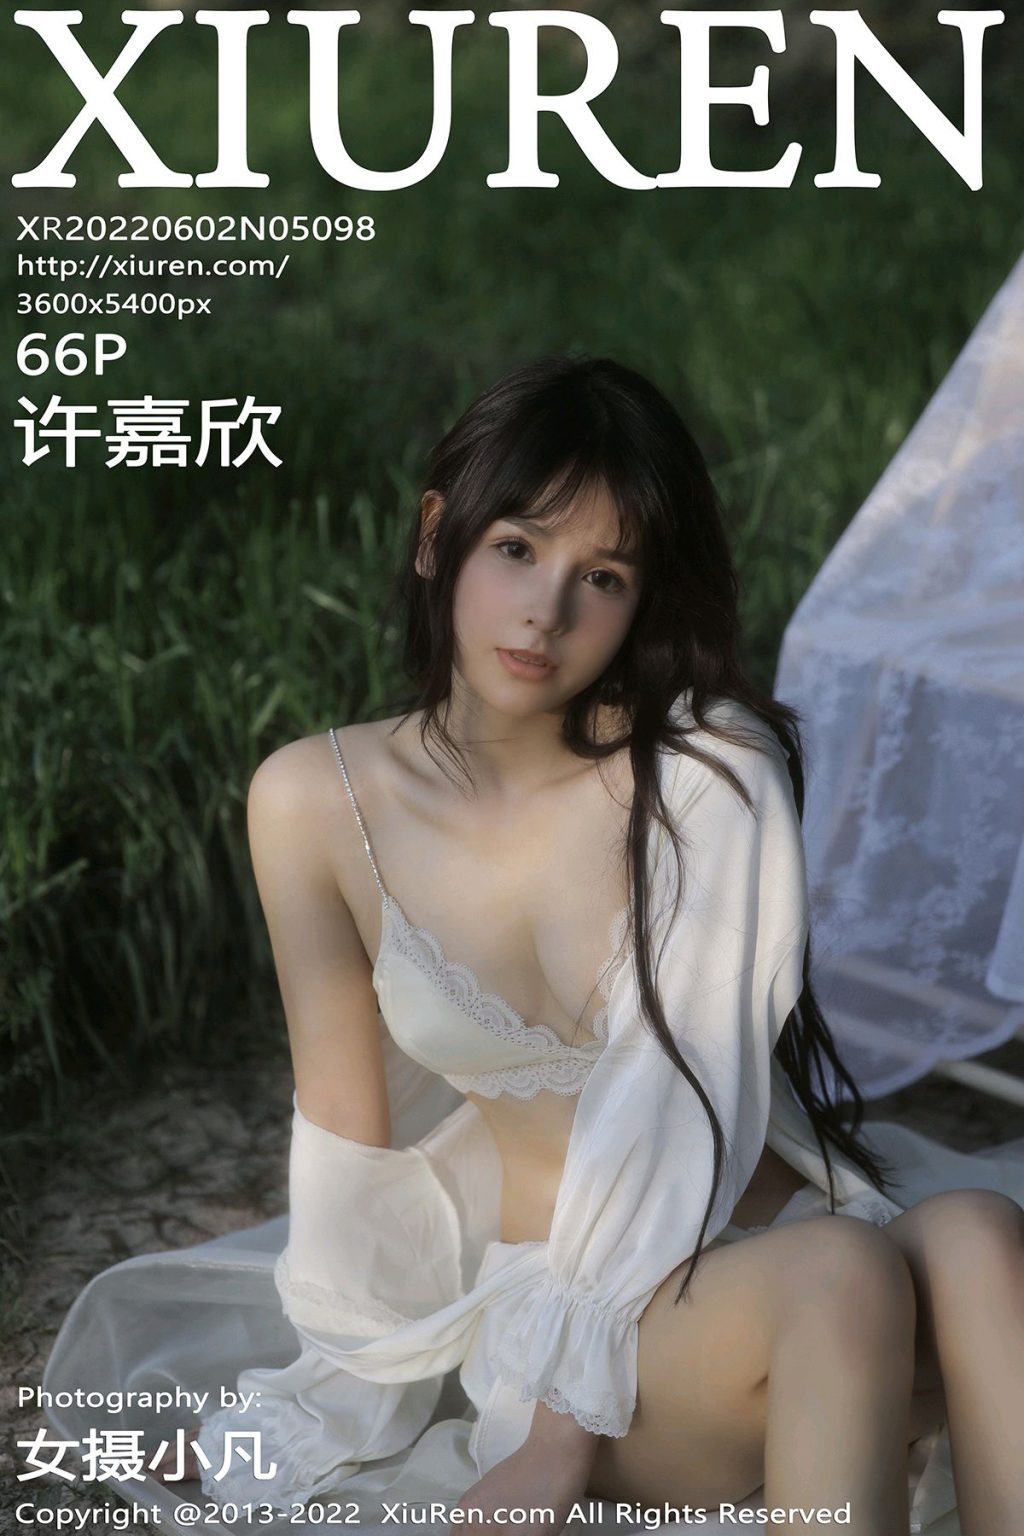 Watch sexy XIUREN No.5098: Xu Jiaxin (许嘉欣) photos